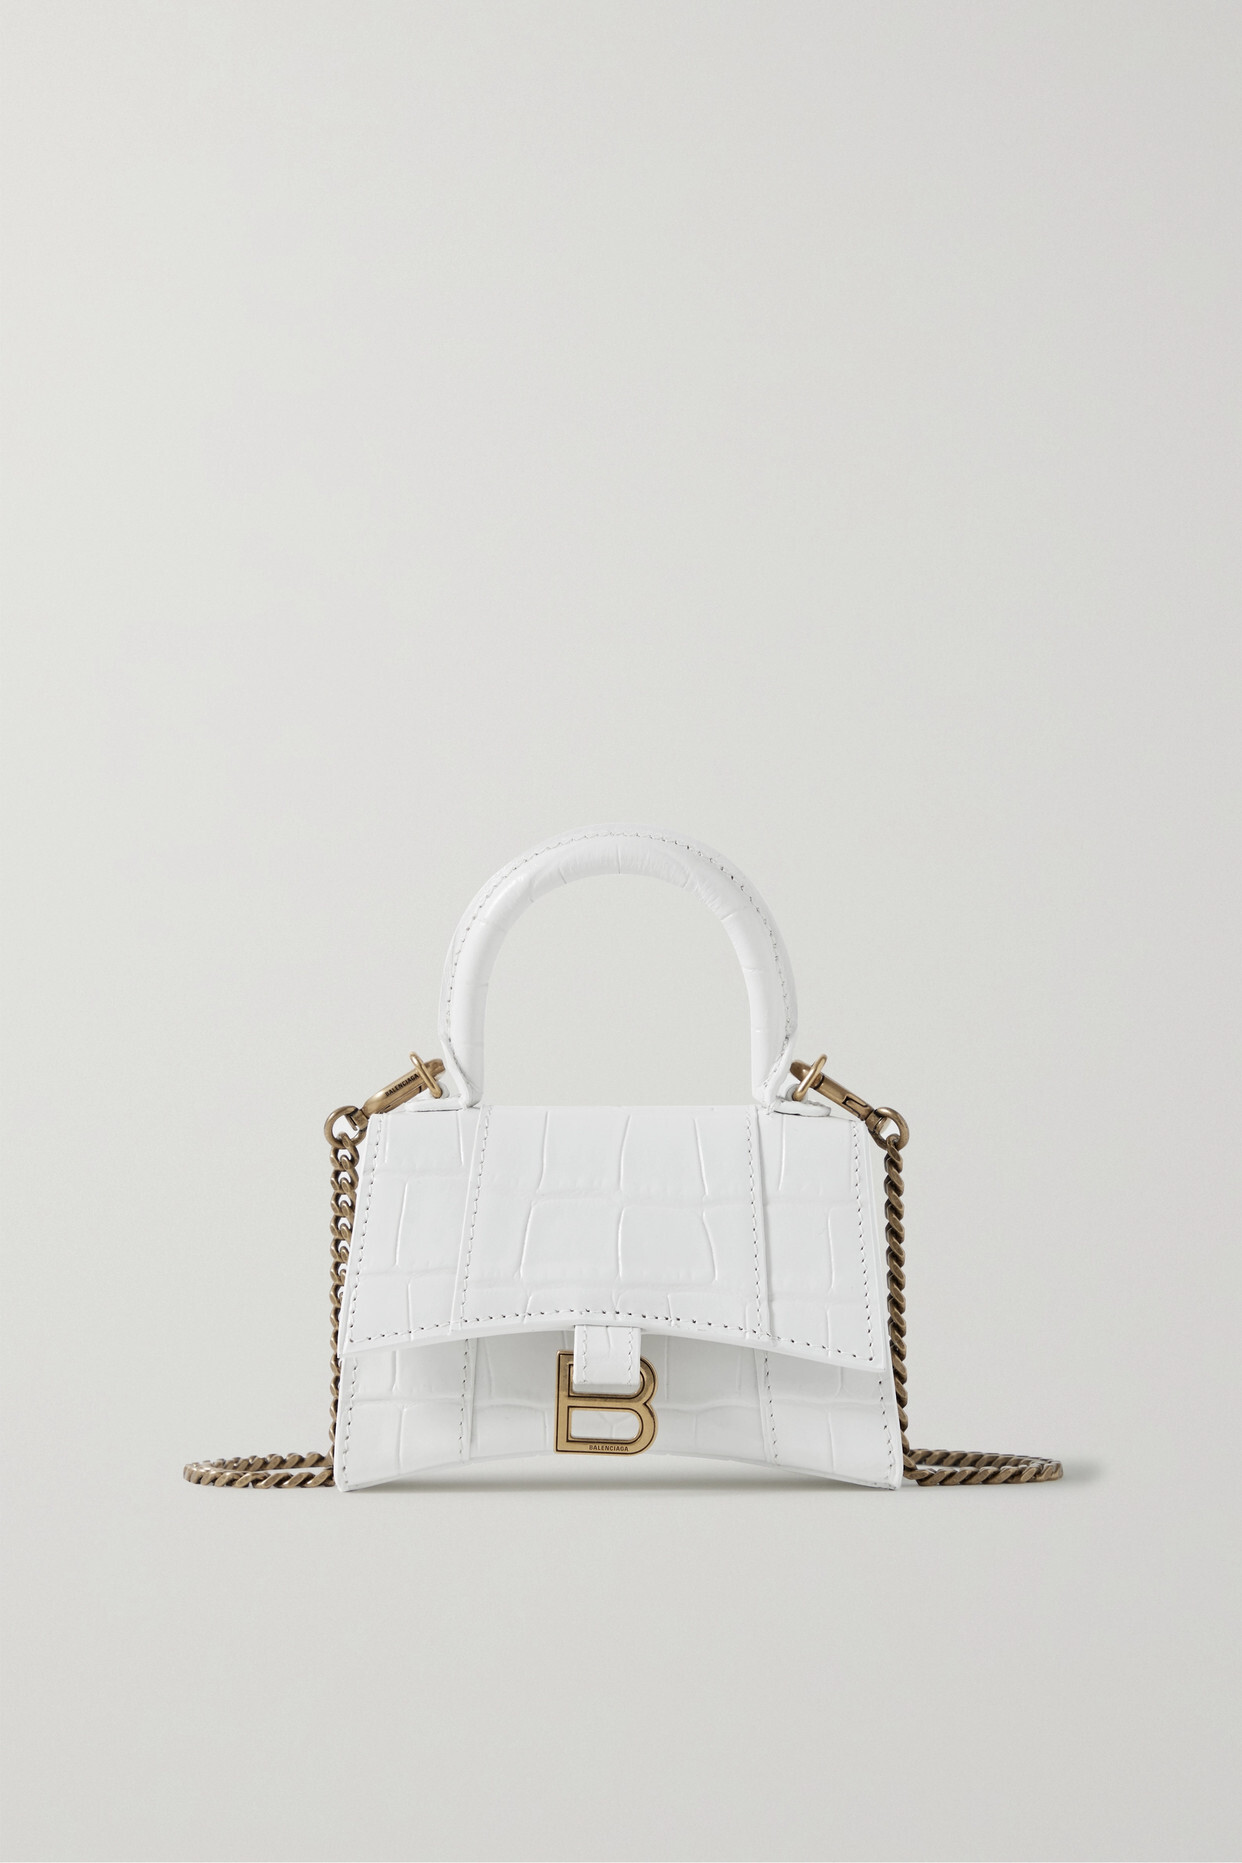 Balenciaga - Hourglass Mini Croc-effect Leather Tote - White